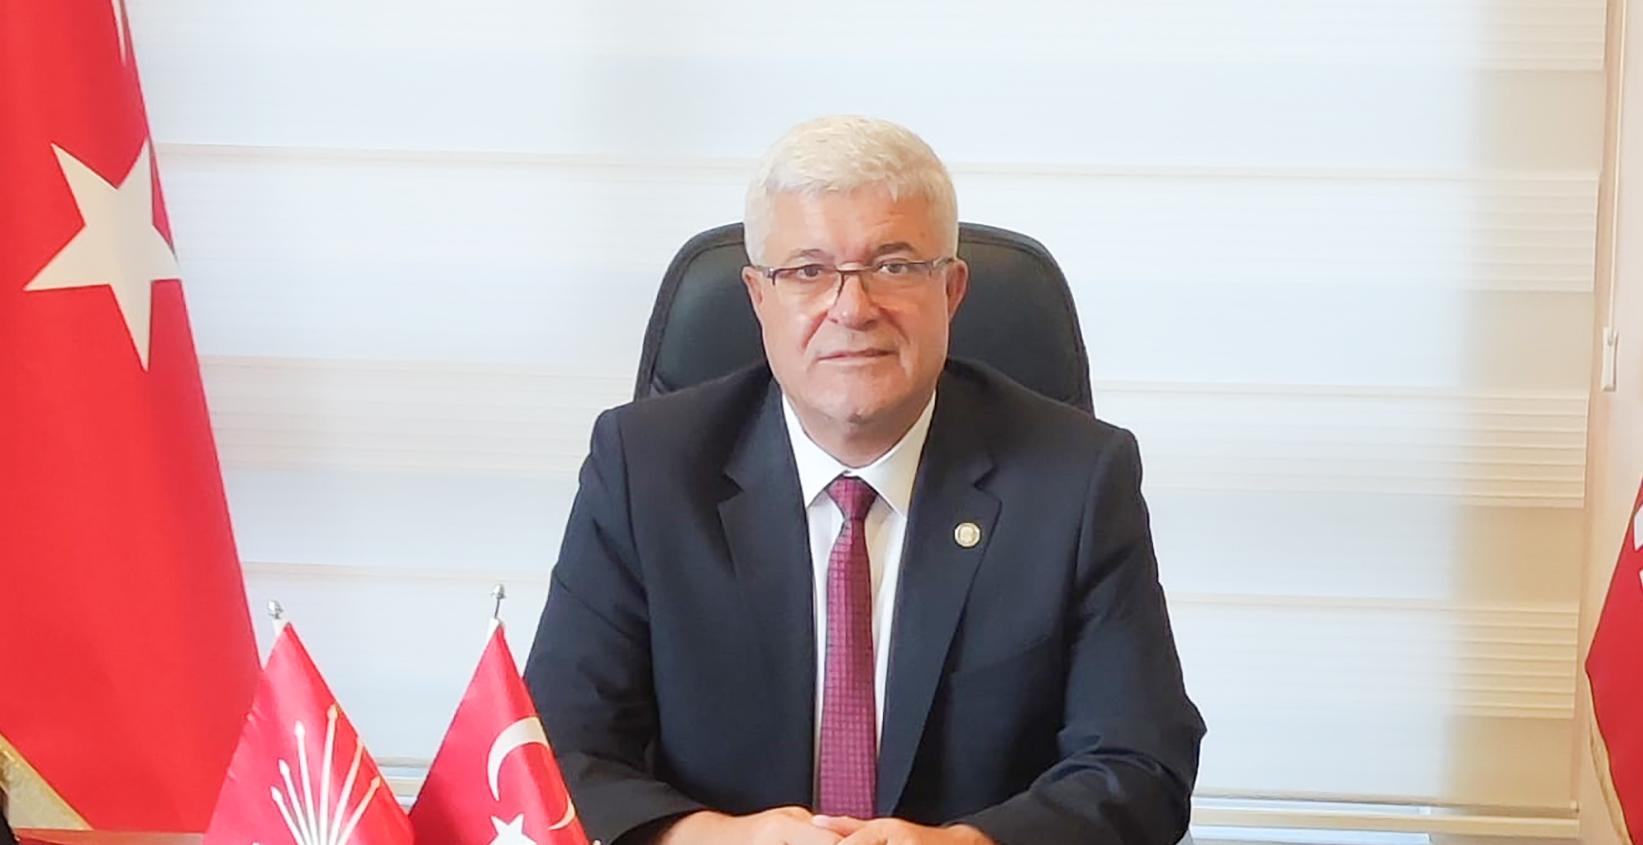 ‘AKP Milletvekilleri lüks yaşamda sınır tanımıyor’